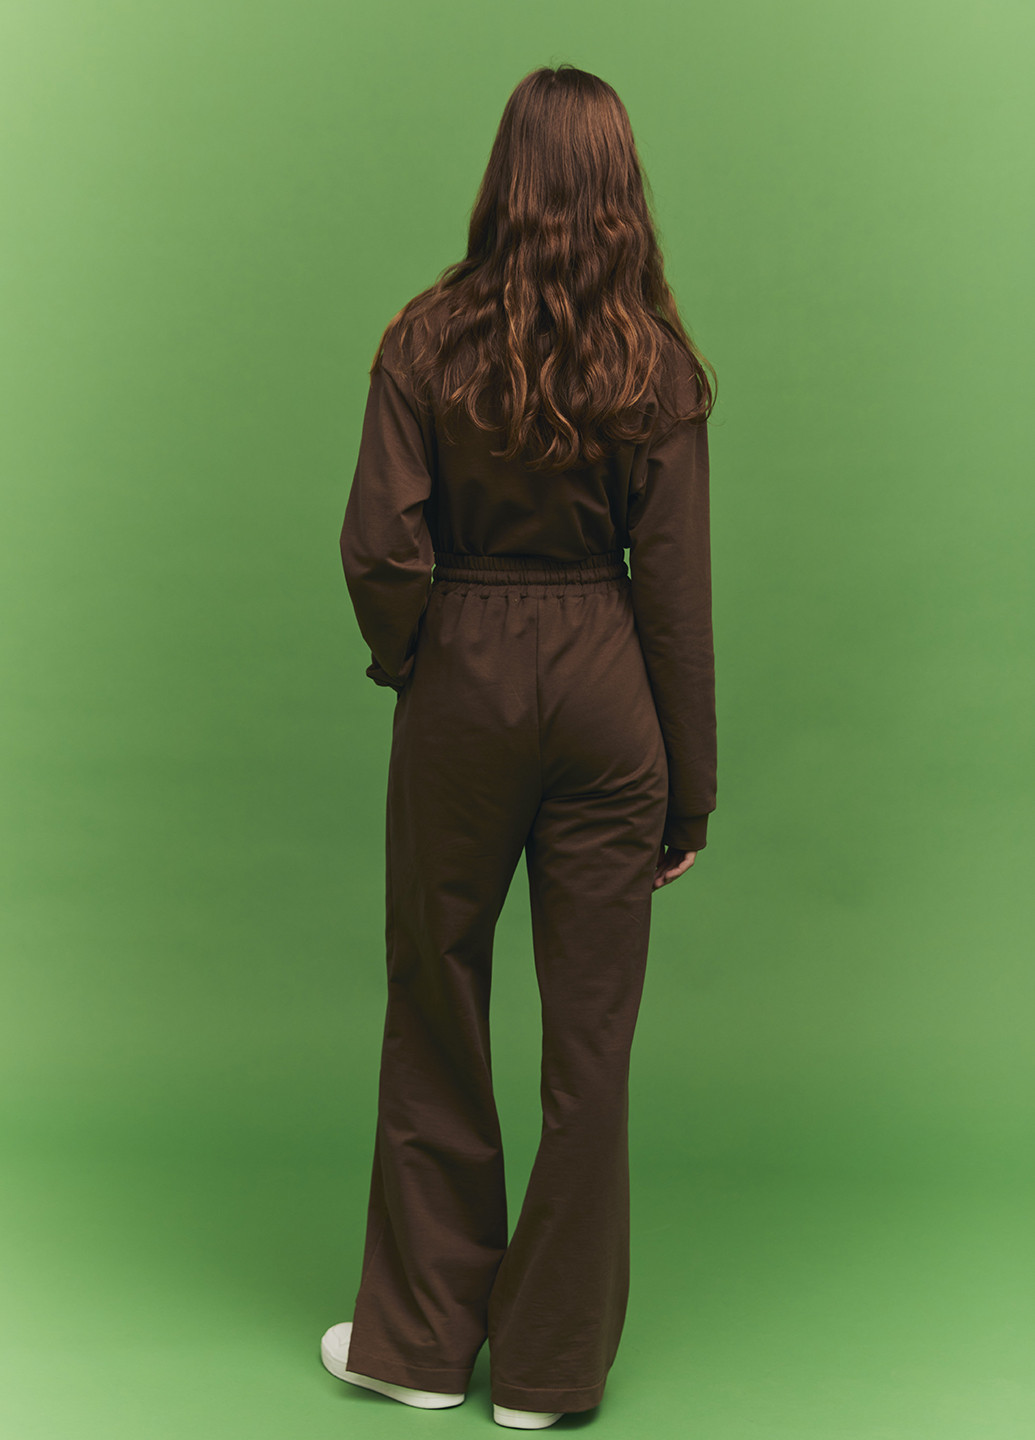 Коричневая женская футболка-джемпер поло с длинными рукавами и рубашечным воротником KASTA design однотонная